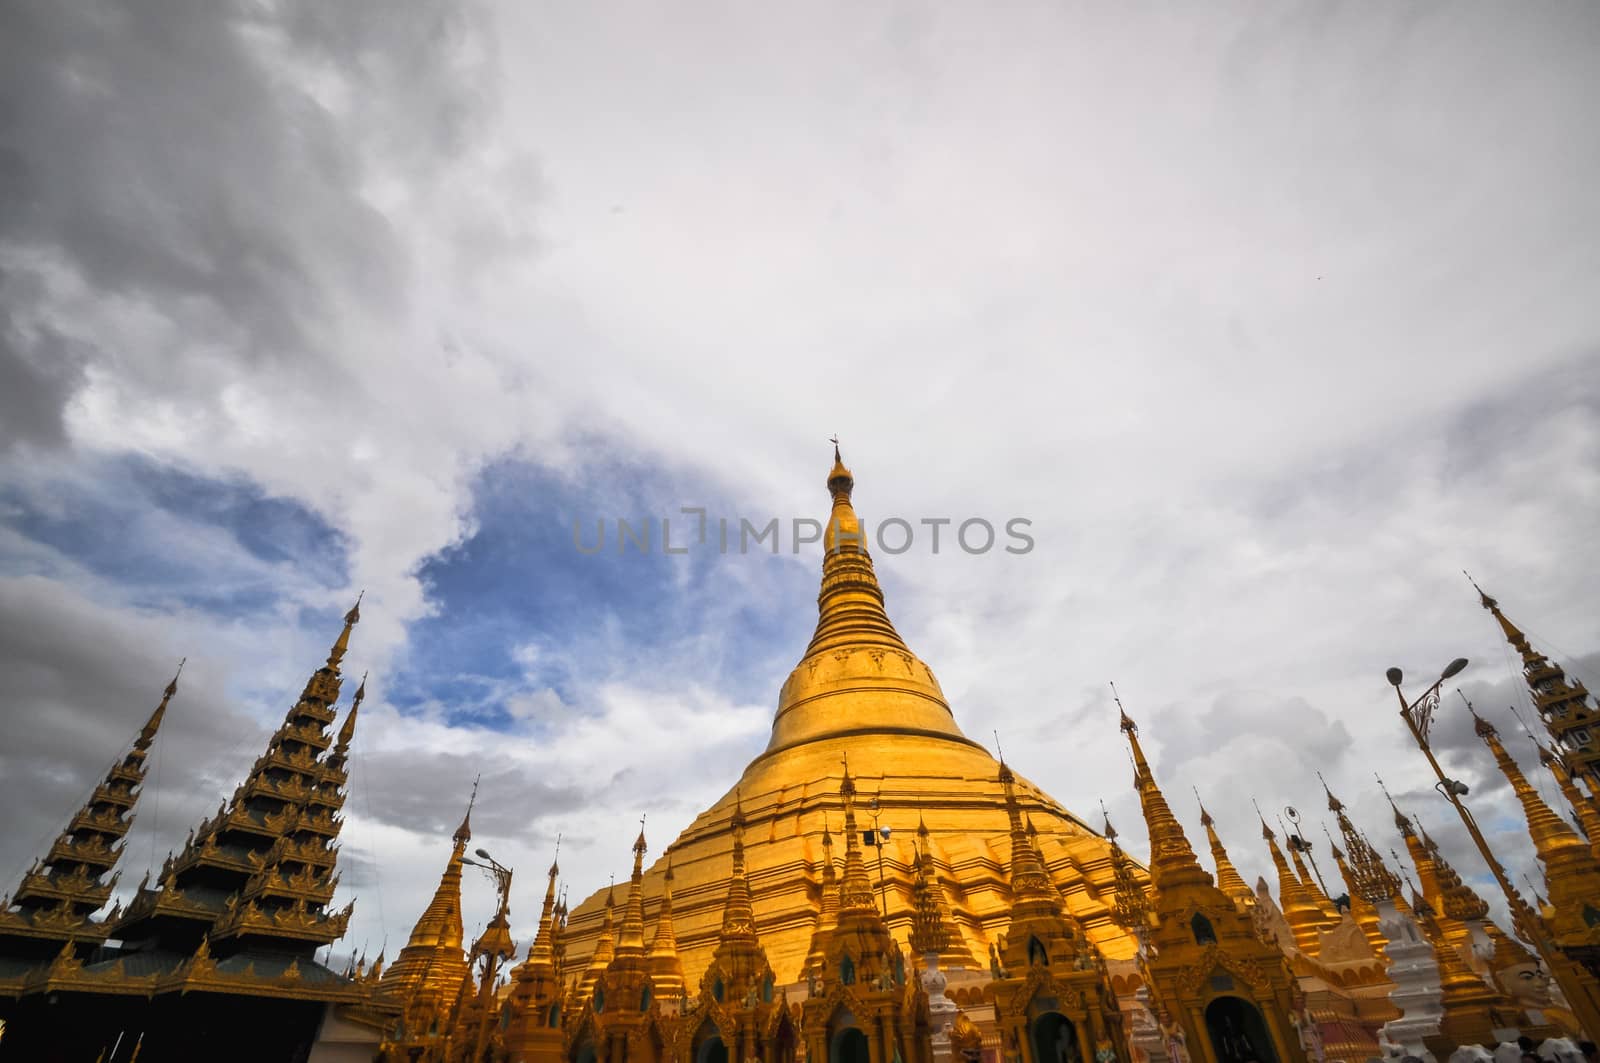 Yangon Myanmar Shwedagon Pagoda Temple by weltreisendertj